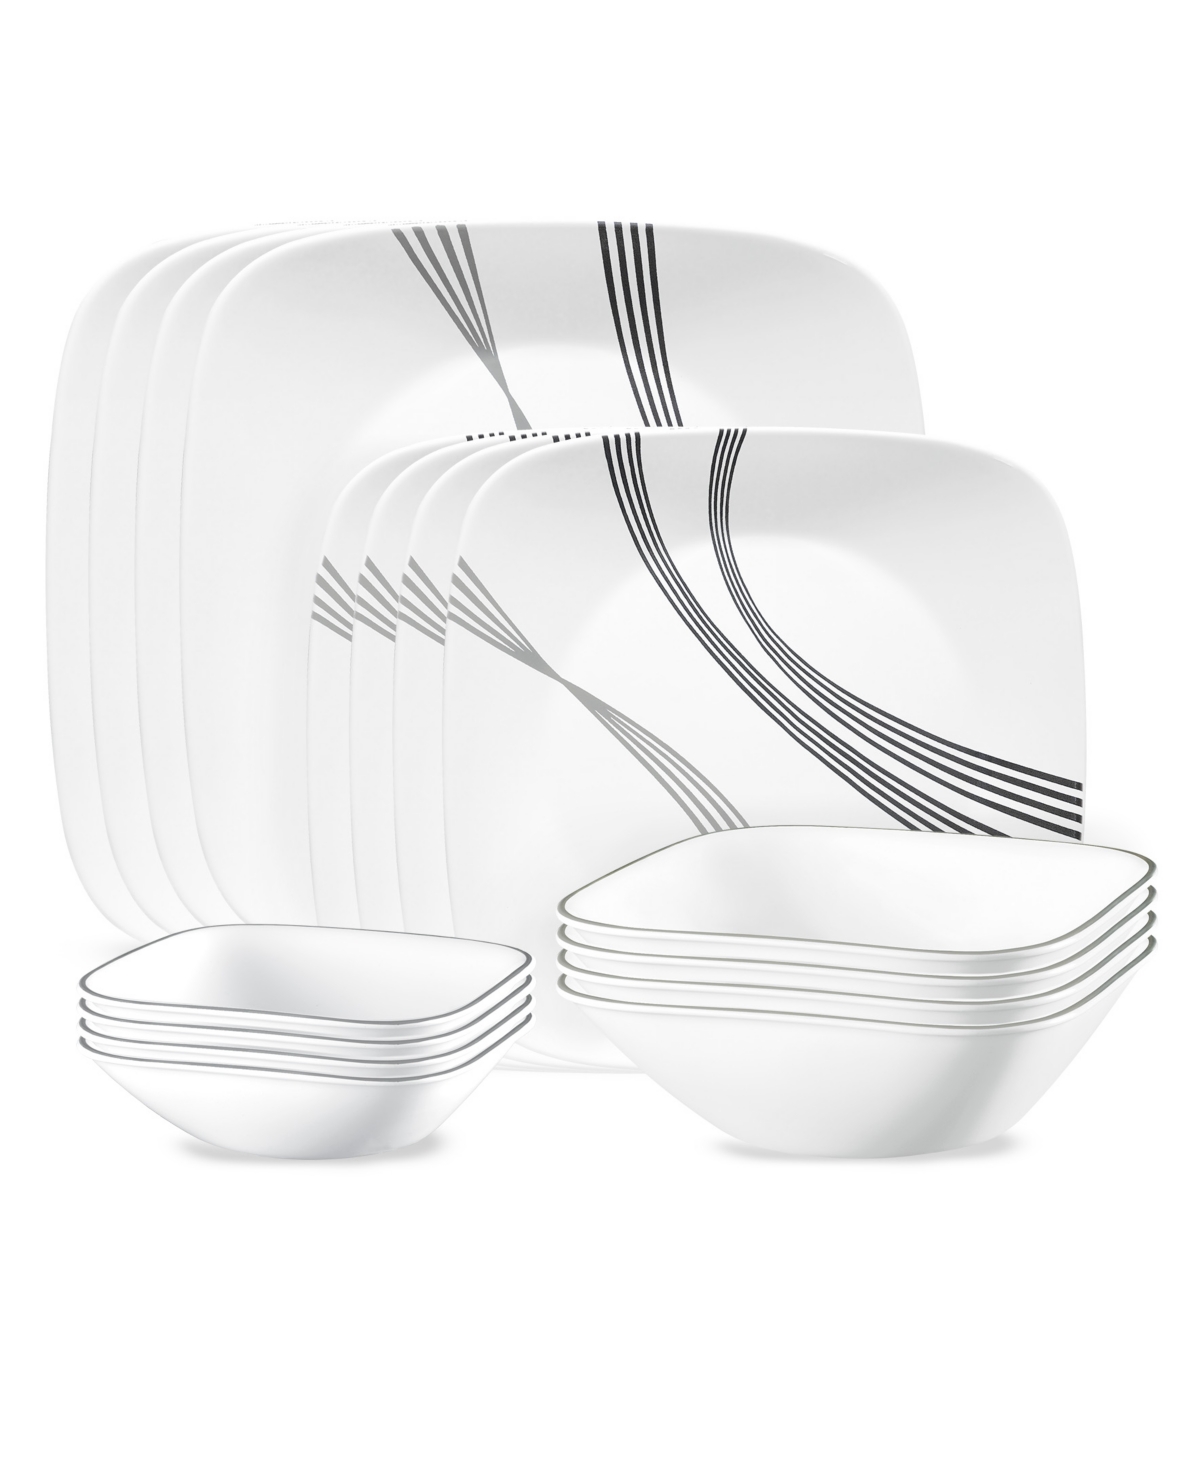 Urban Arc 16 Piece Dinnerware Set, Service for 4 - White